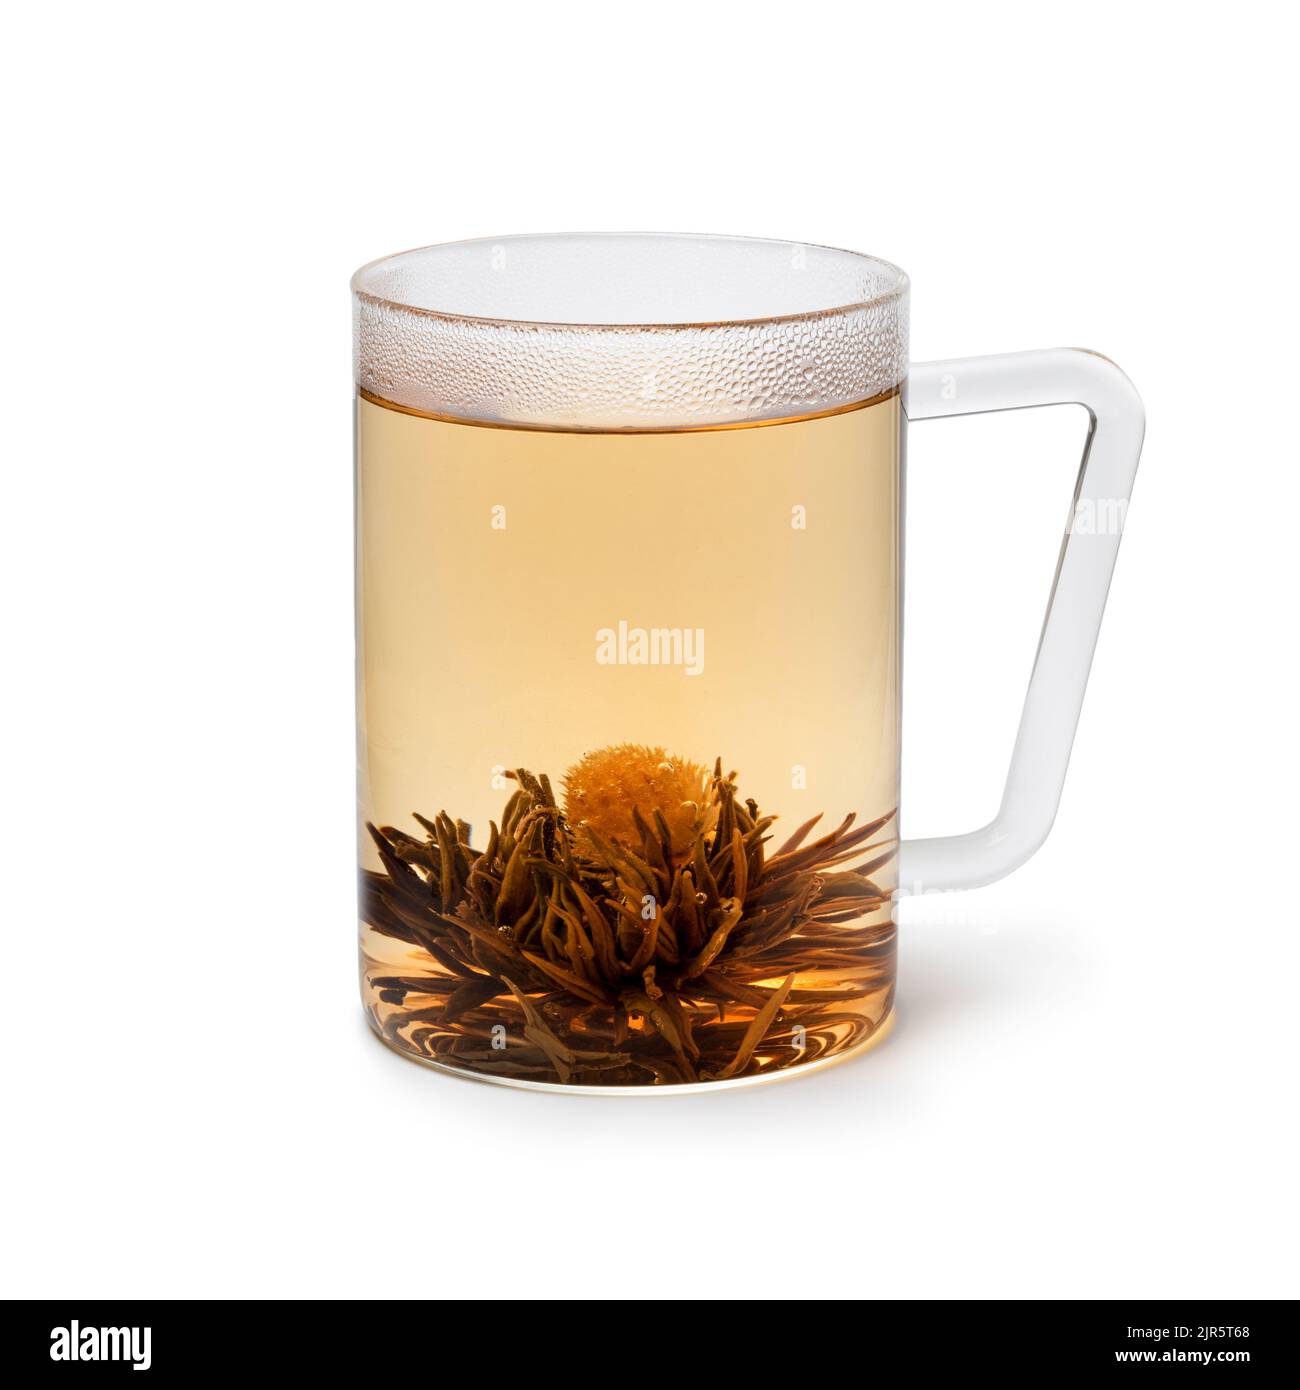 Tazza di vetro con un tradizionale fiore di tè Jasmine essiccato a mano asiatico e tè isolato su sfondo bianco Foto Stock